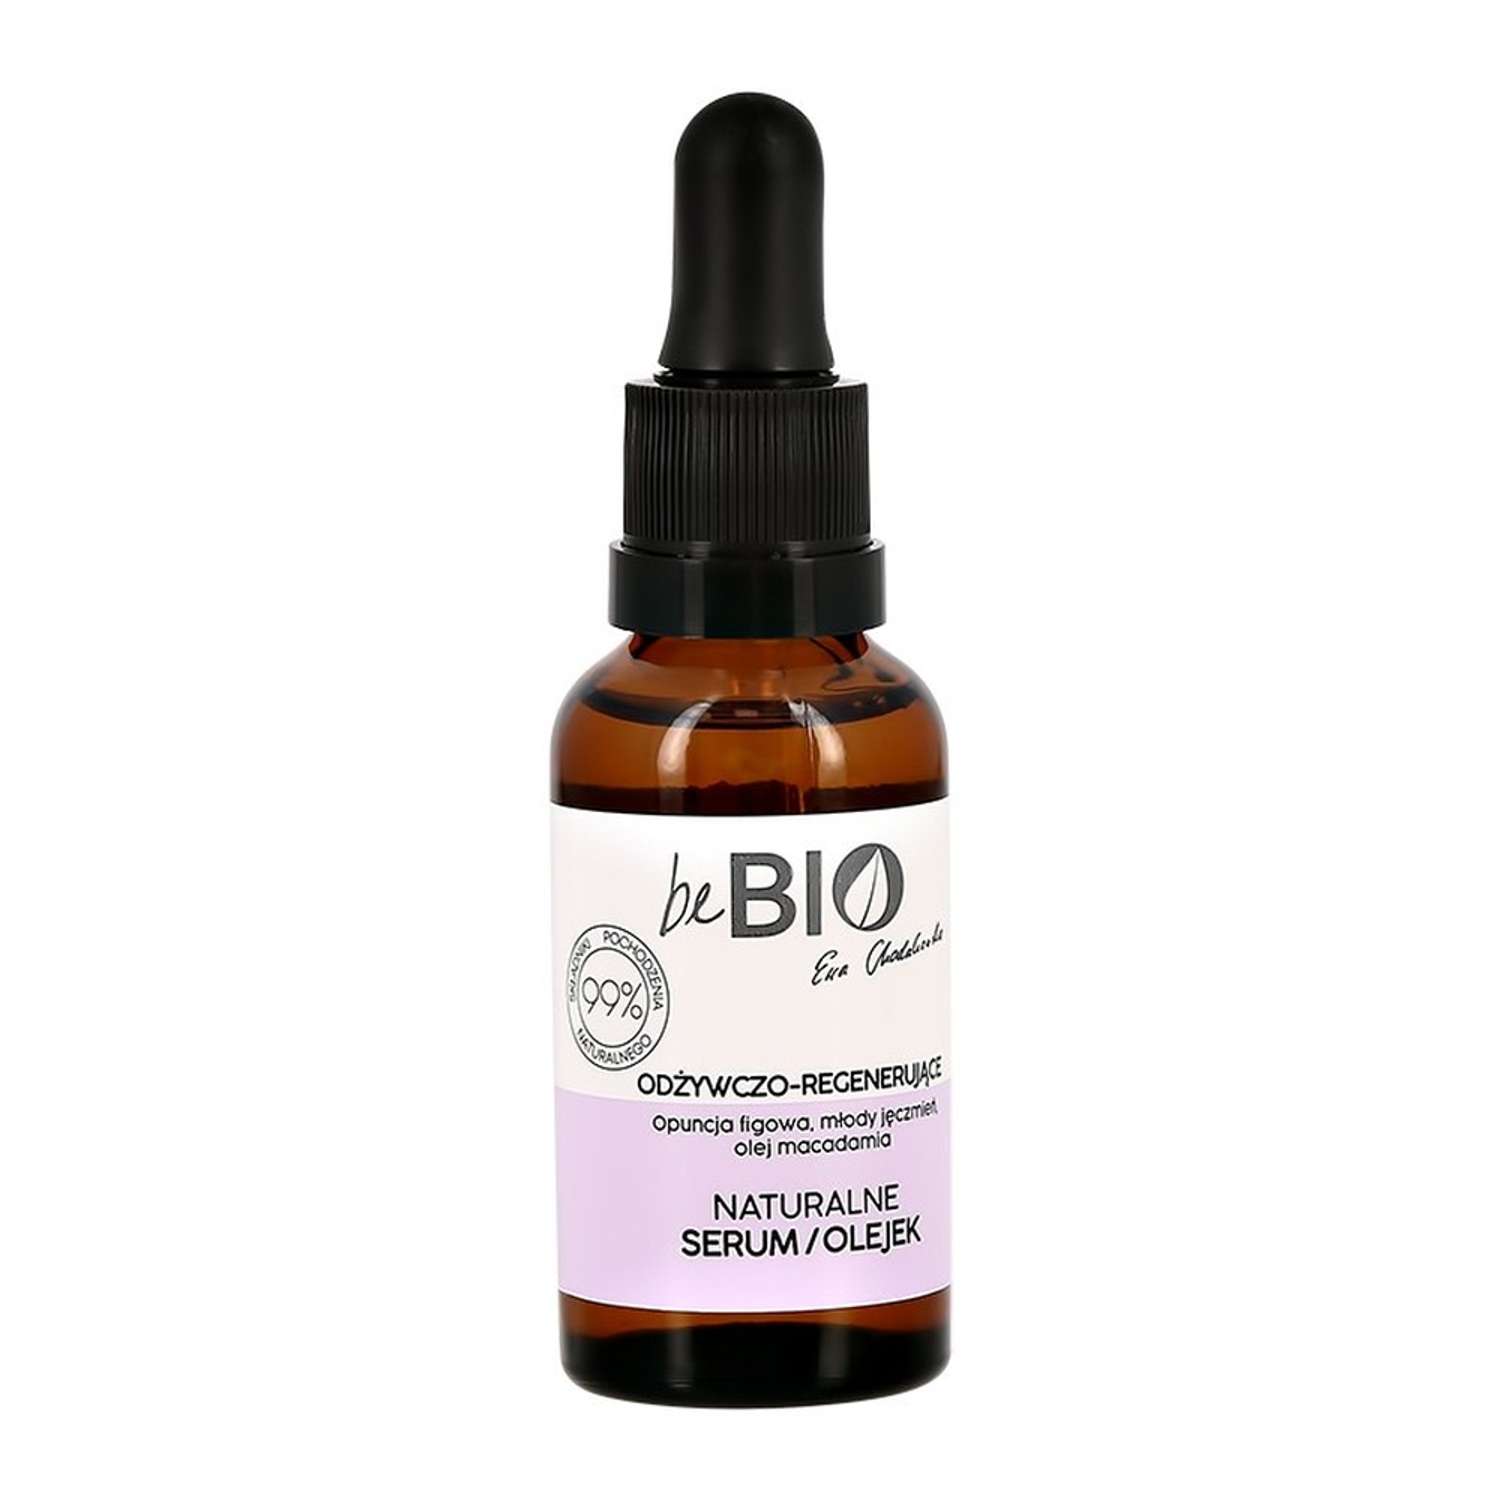 Сыворотка-масло для лица beBio питательно-регенерирующая 30 мл - фото 2